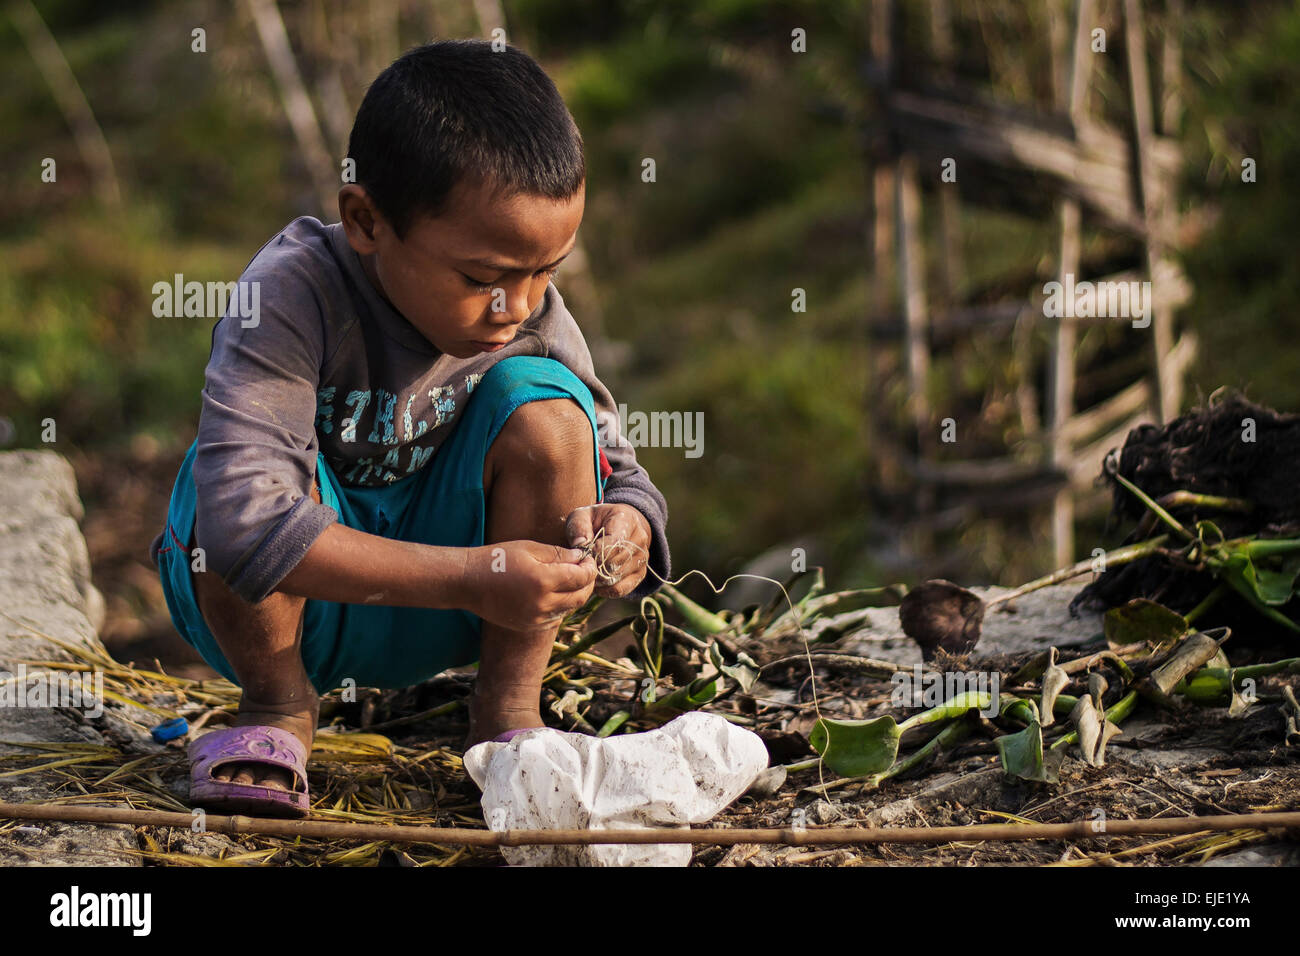 A kid fishing in the morningin Pokhara, Nepal Stock Photo